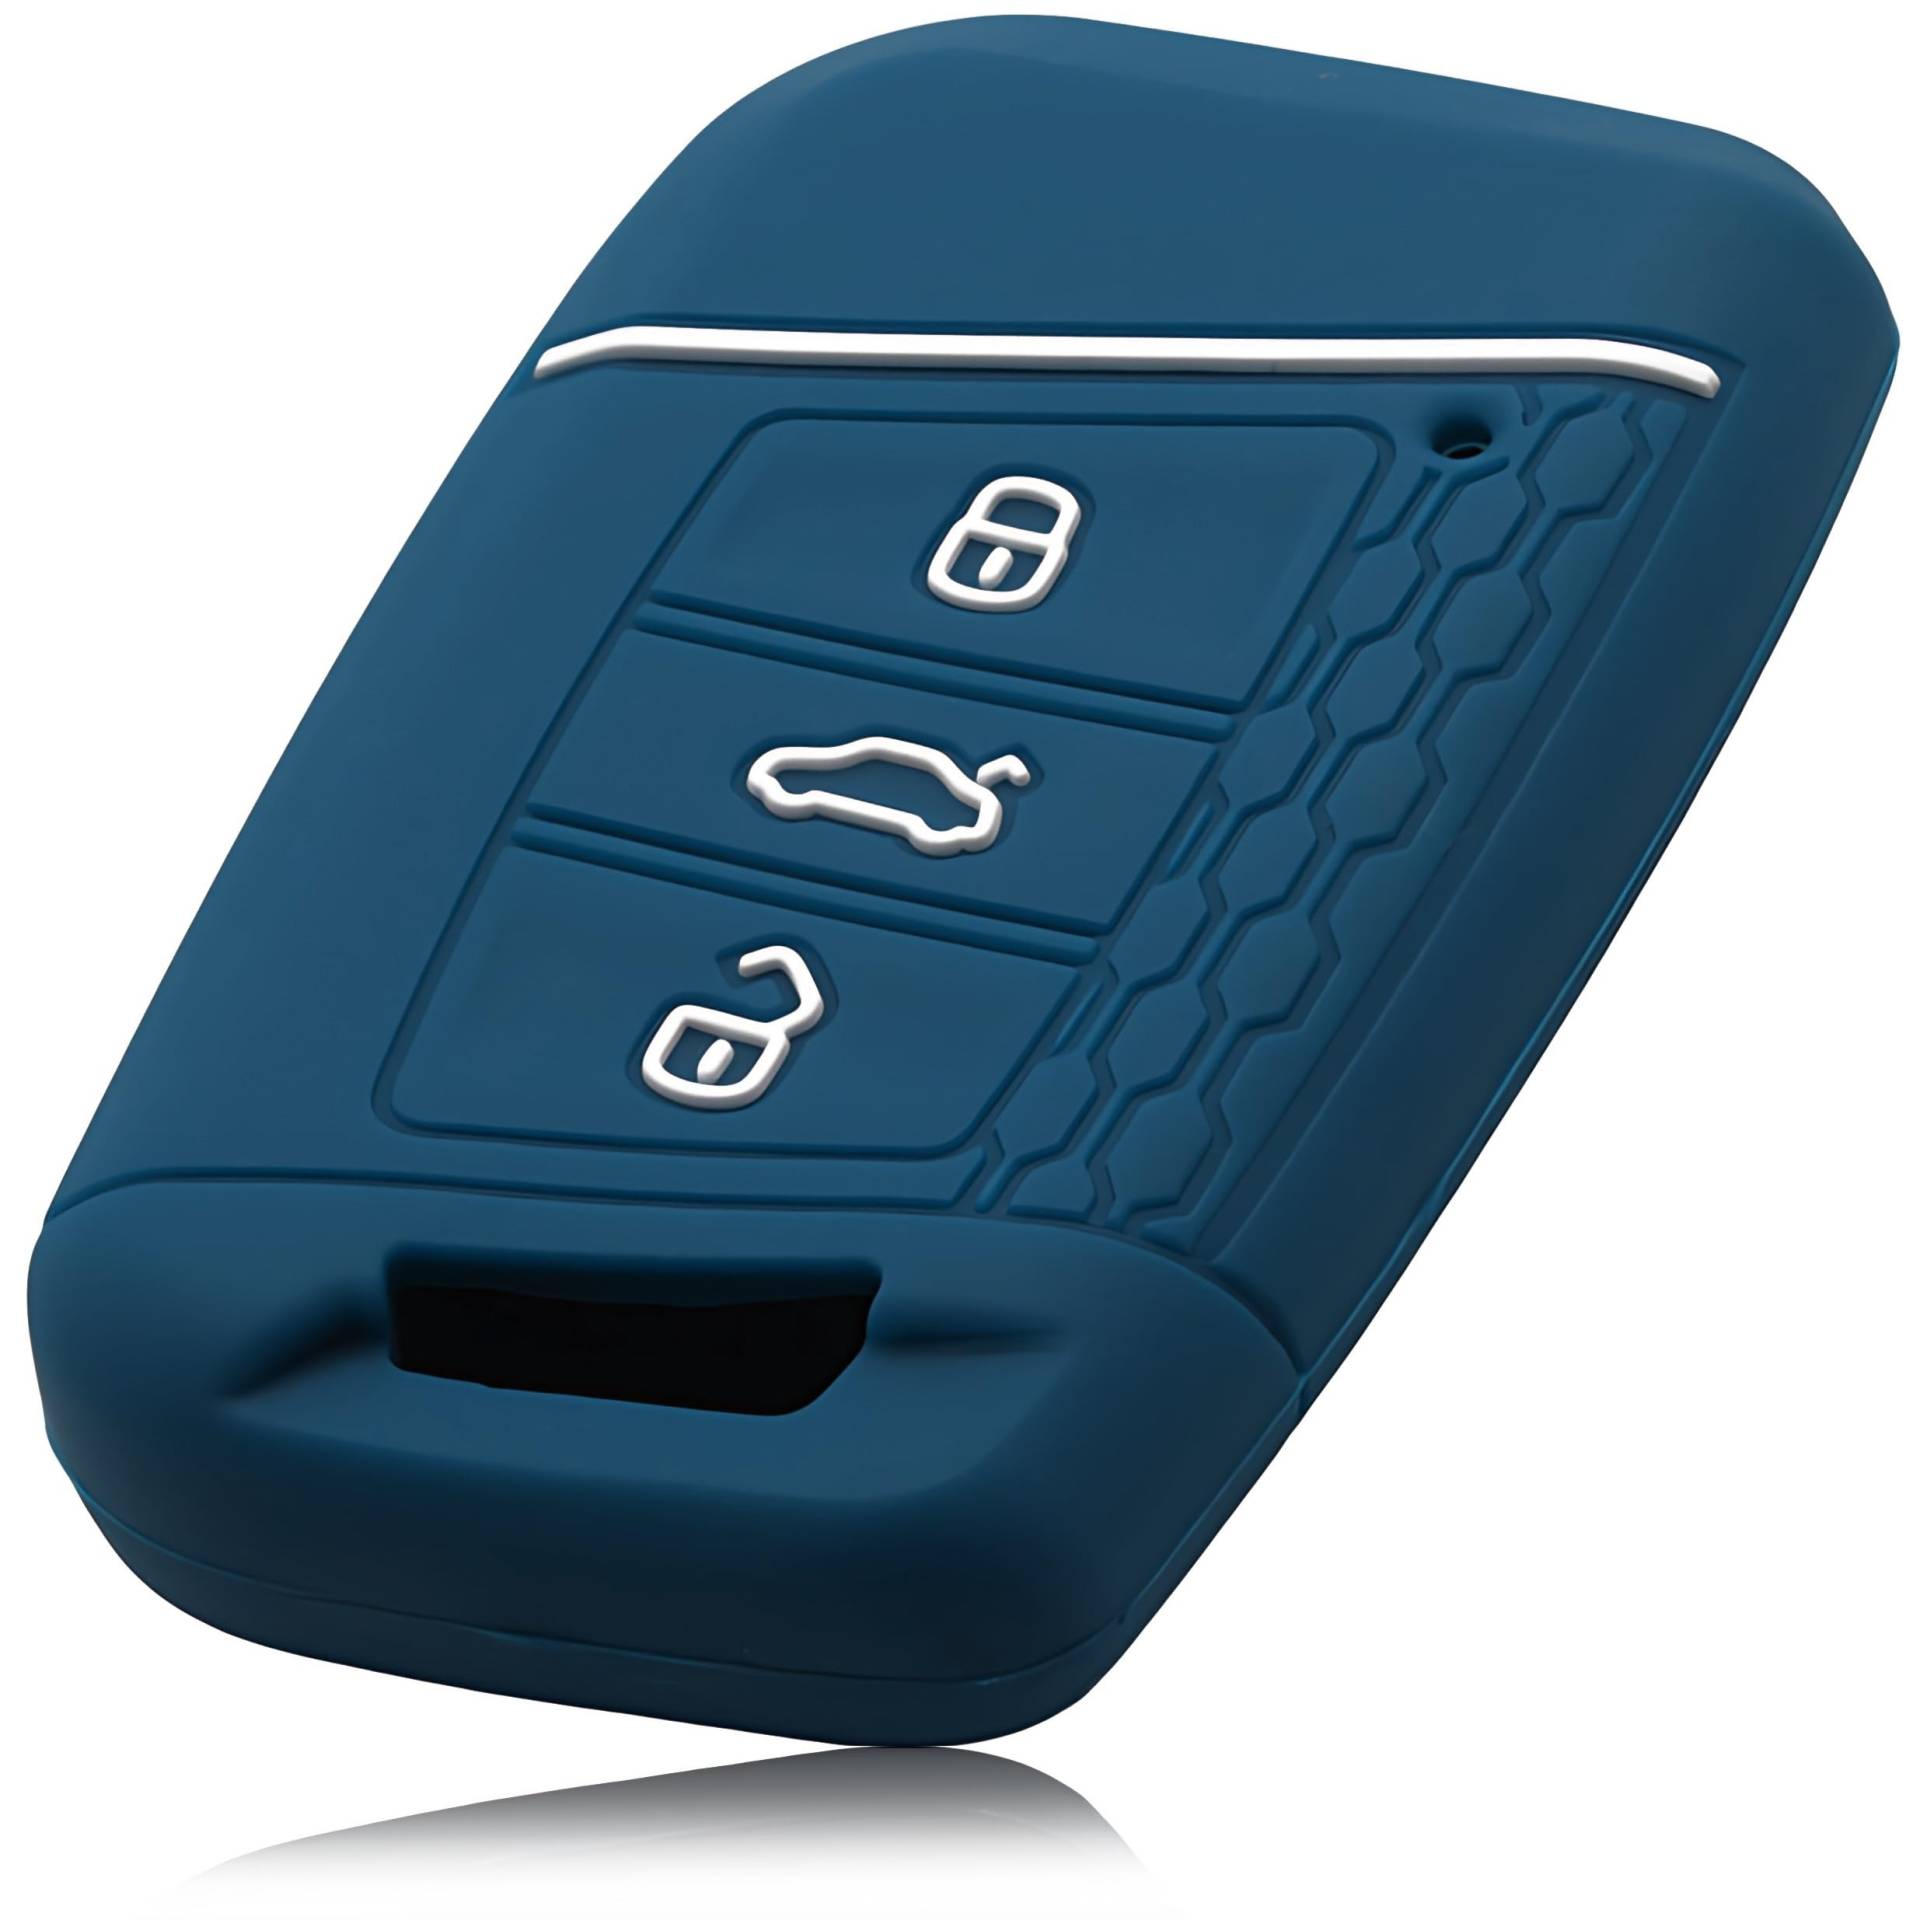 FOAMO Autoschlüssel Hülle Kompatibel mit VW Passat B8, SEAT, SKODA Autoschlüssel - Silikon Schlüsselhülle - Schutz-Hülle für Autoschlüssel Blau-Weiß von FOAMO